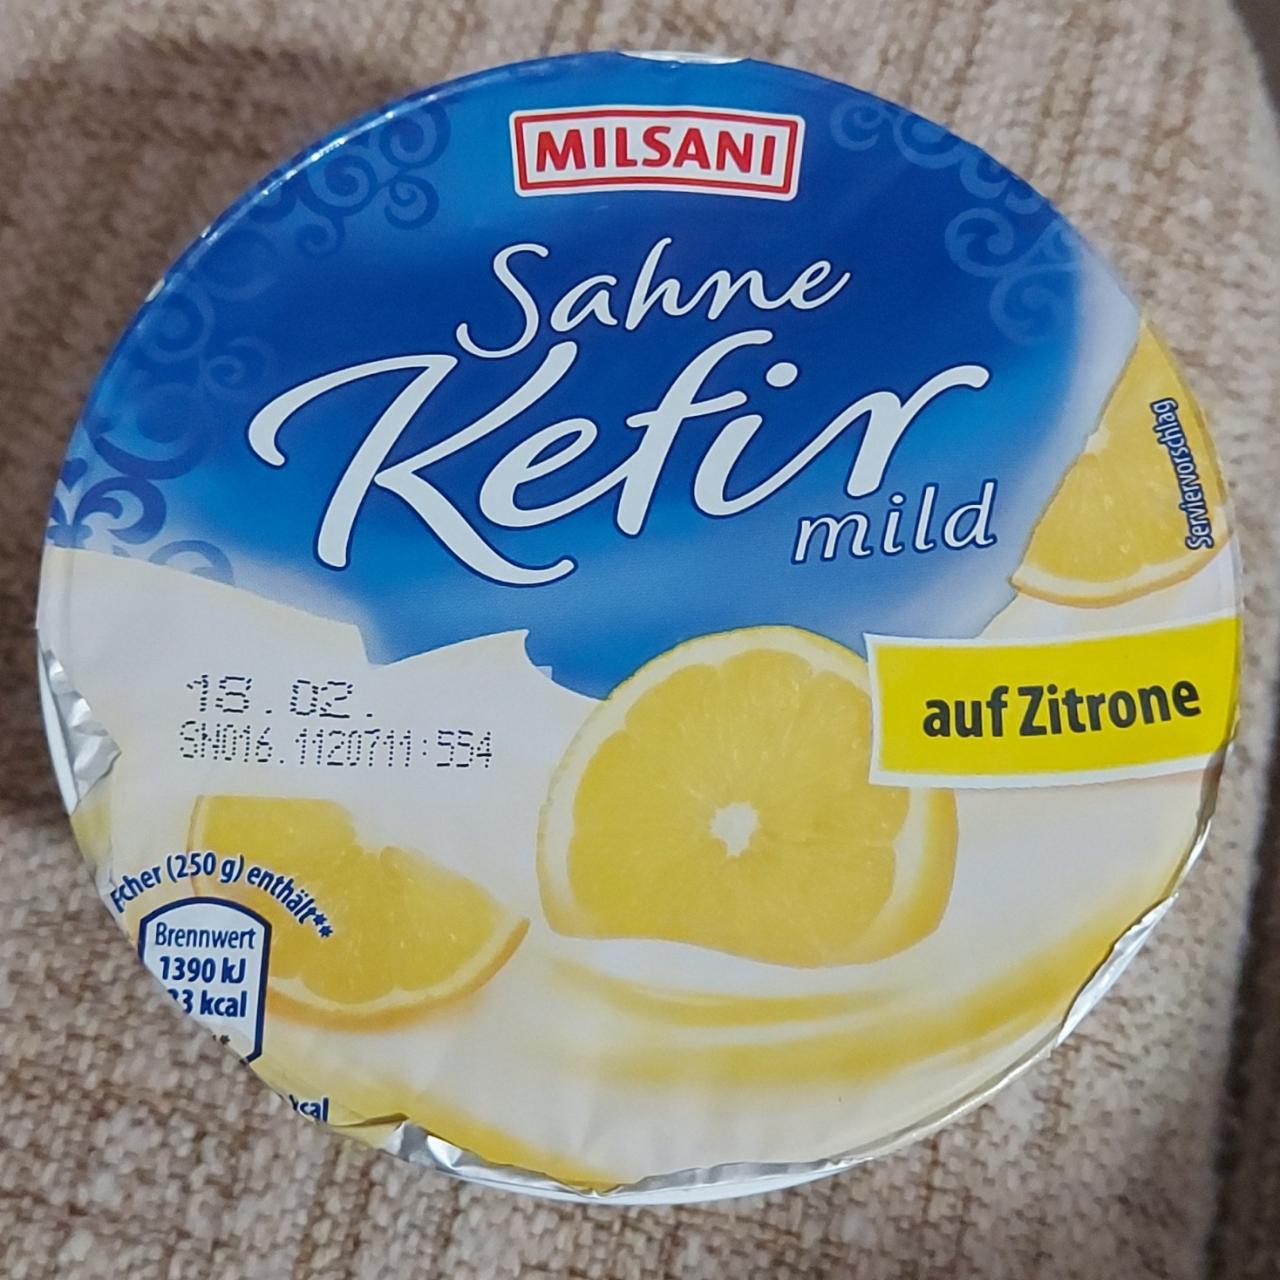 Fotografie - Sahne Kefir mild auf Zitrone Milsani